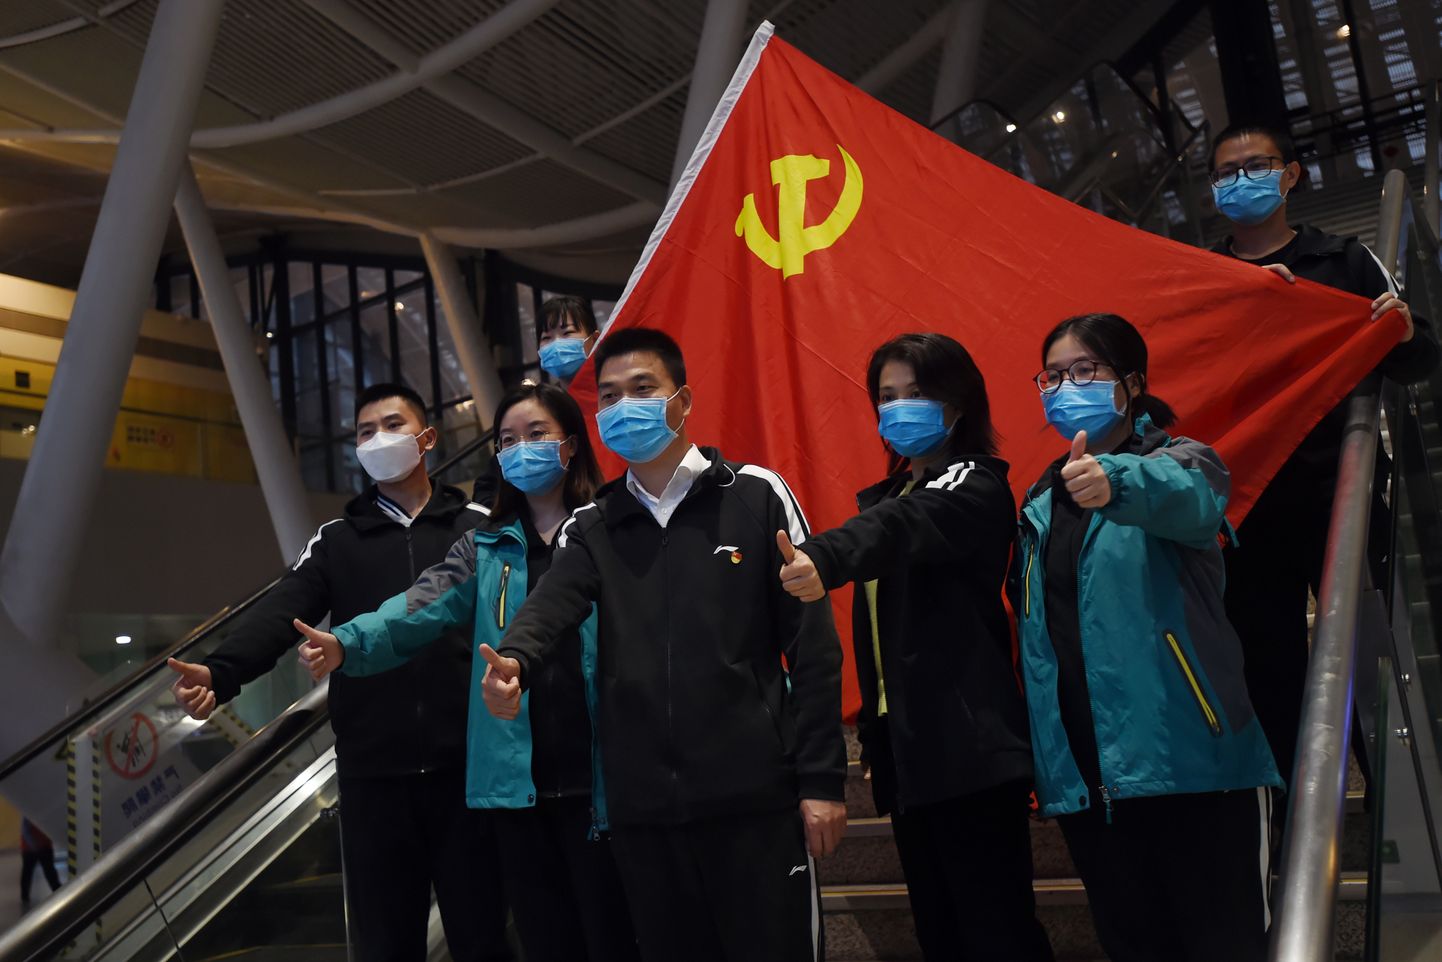 Uue koroonaviiruse epitsentrist Wuhanist lahkuvad arstid poseerimas Hiina kommunistliku partei lipu taustal. Kuna Wuhanis on uusi nakatunuid vähemaks jäänud, saavad paljud mujalt riigist appi saabunud meditsiinitöötajad tagasi koju minna.